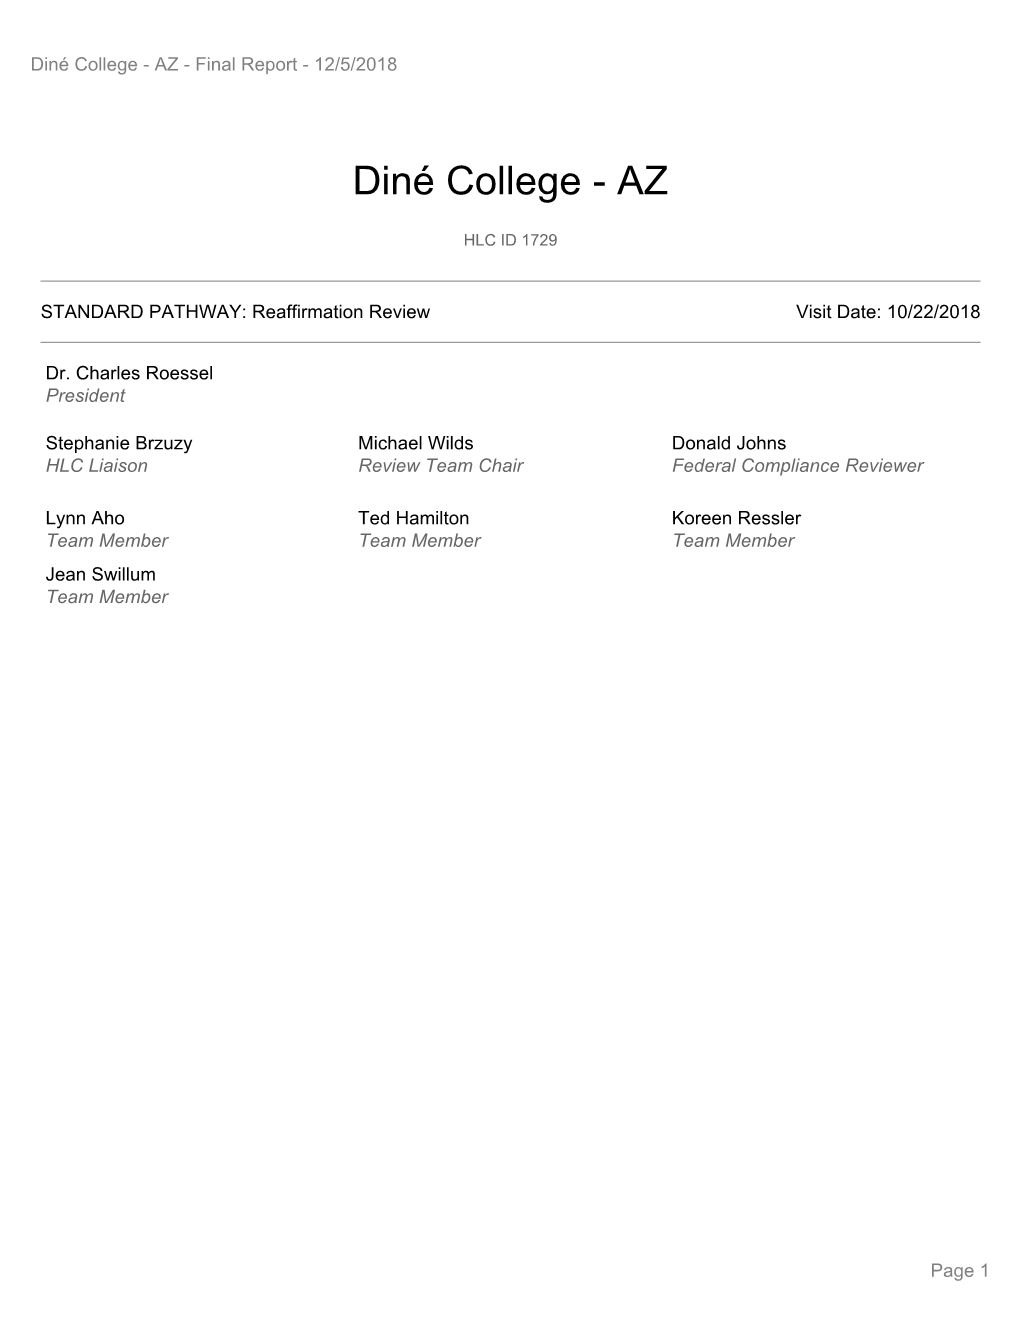 Diné College - AZ - Final Report - 12/5/2018